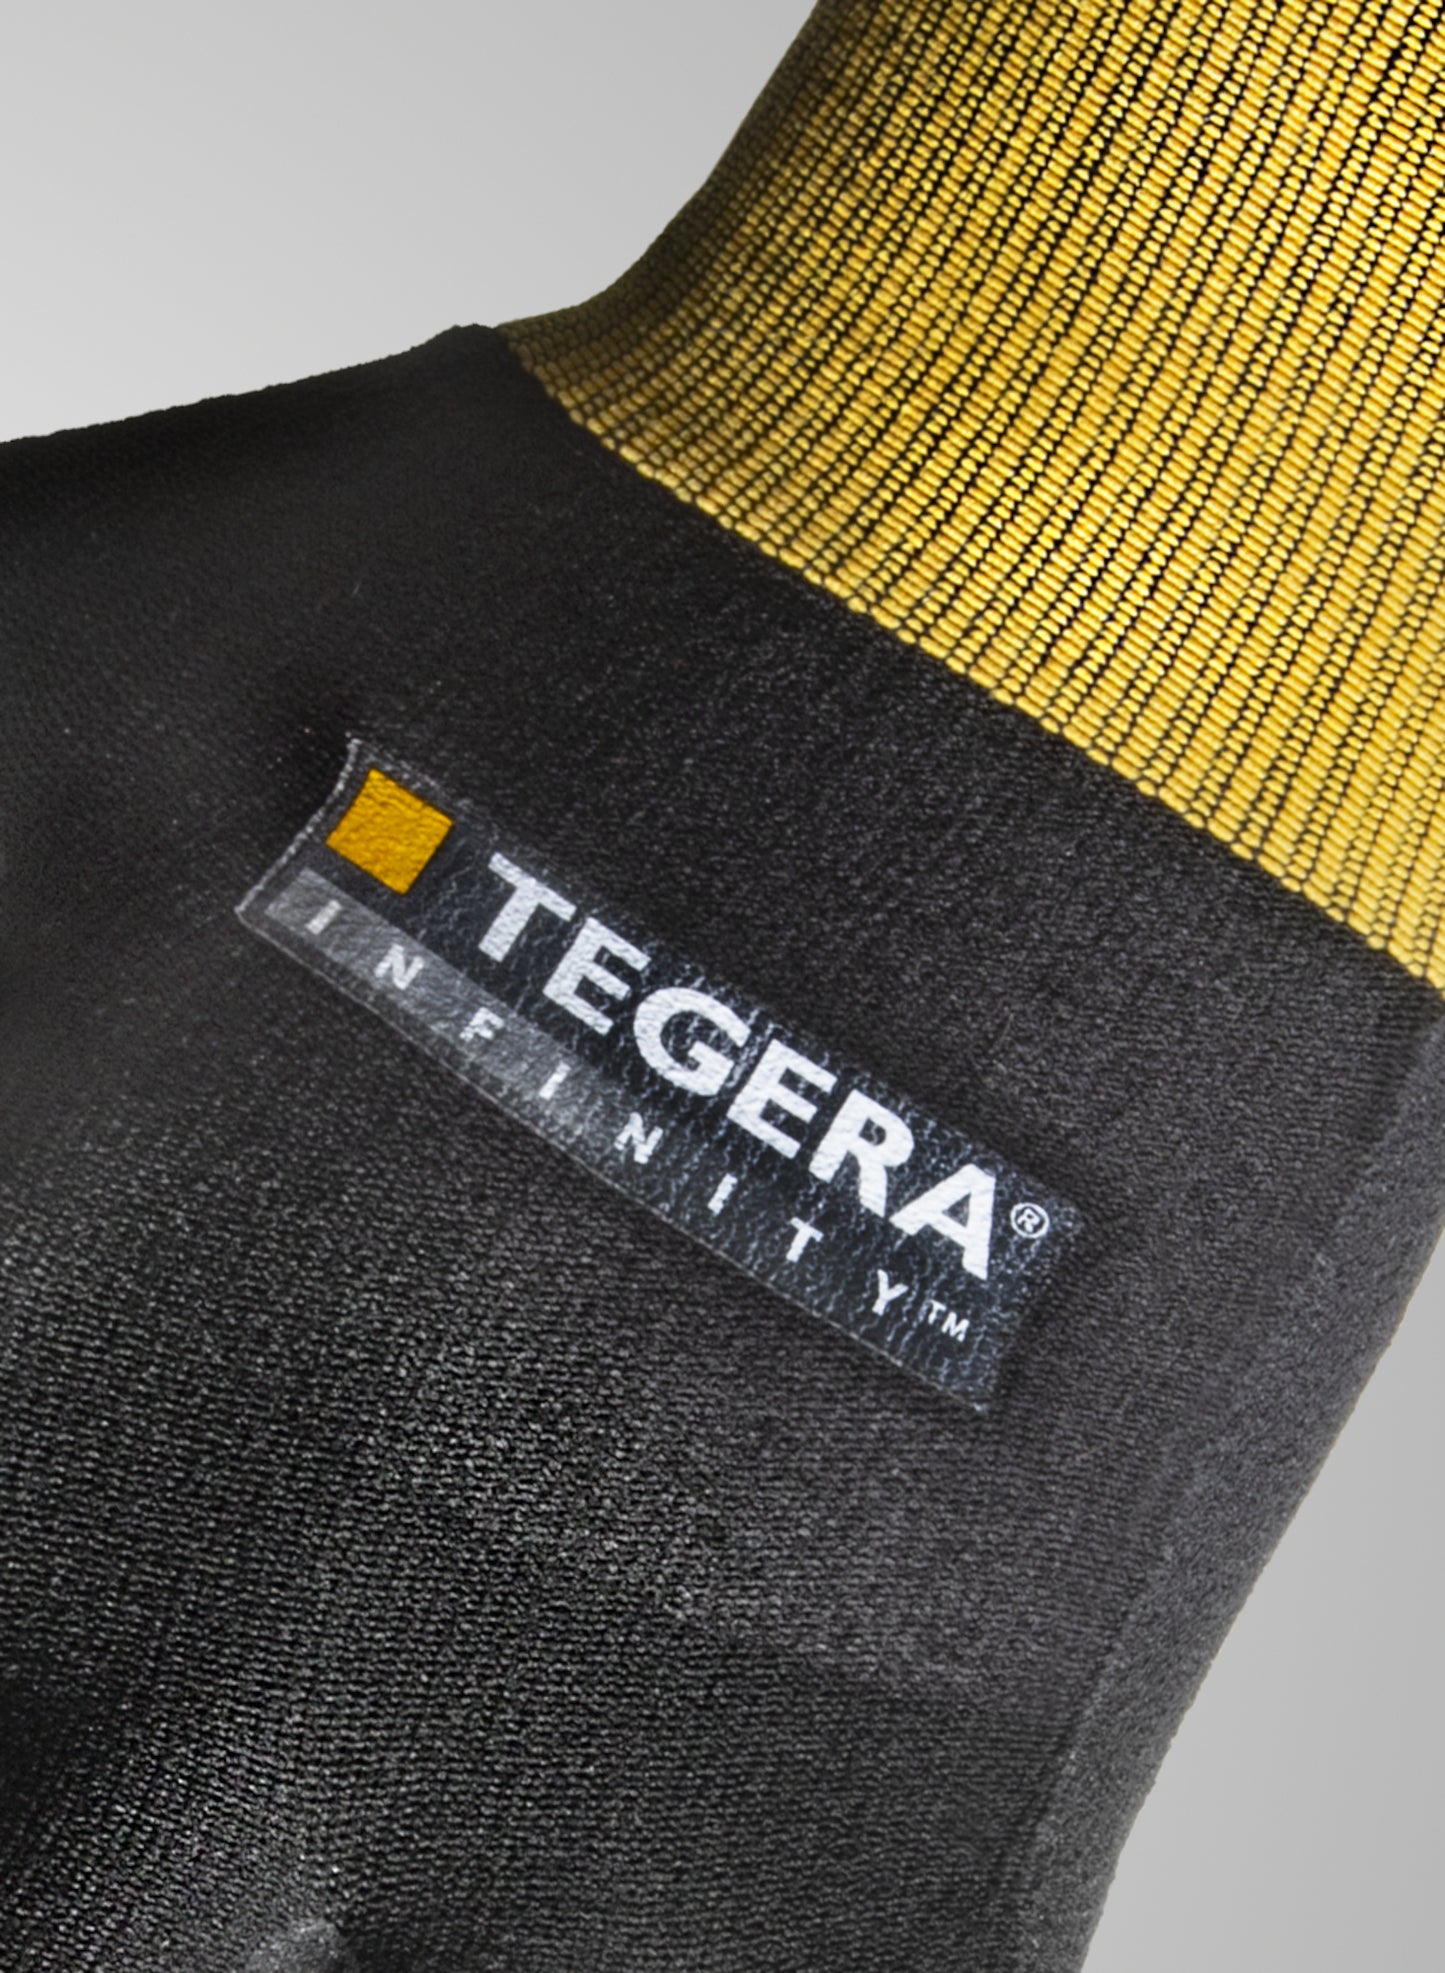 Χειμερινά Γάντια εργασίας Tegera 8801 επαφής έως 100° C